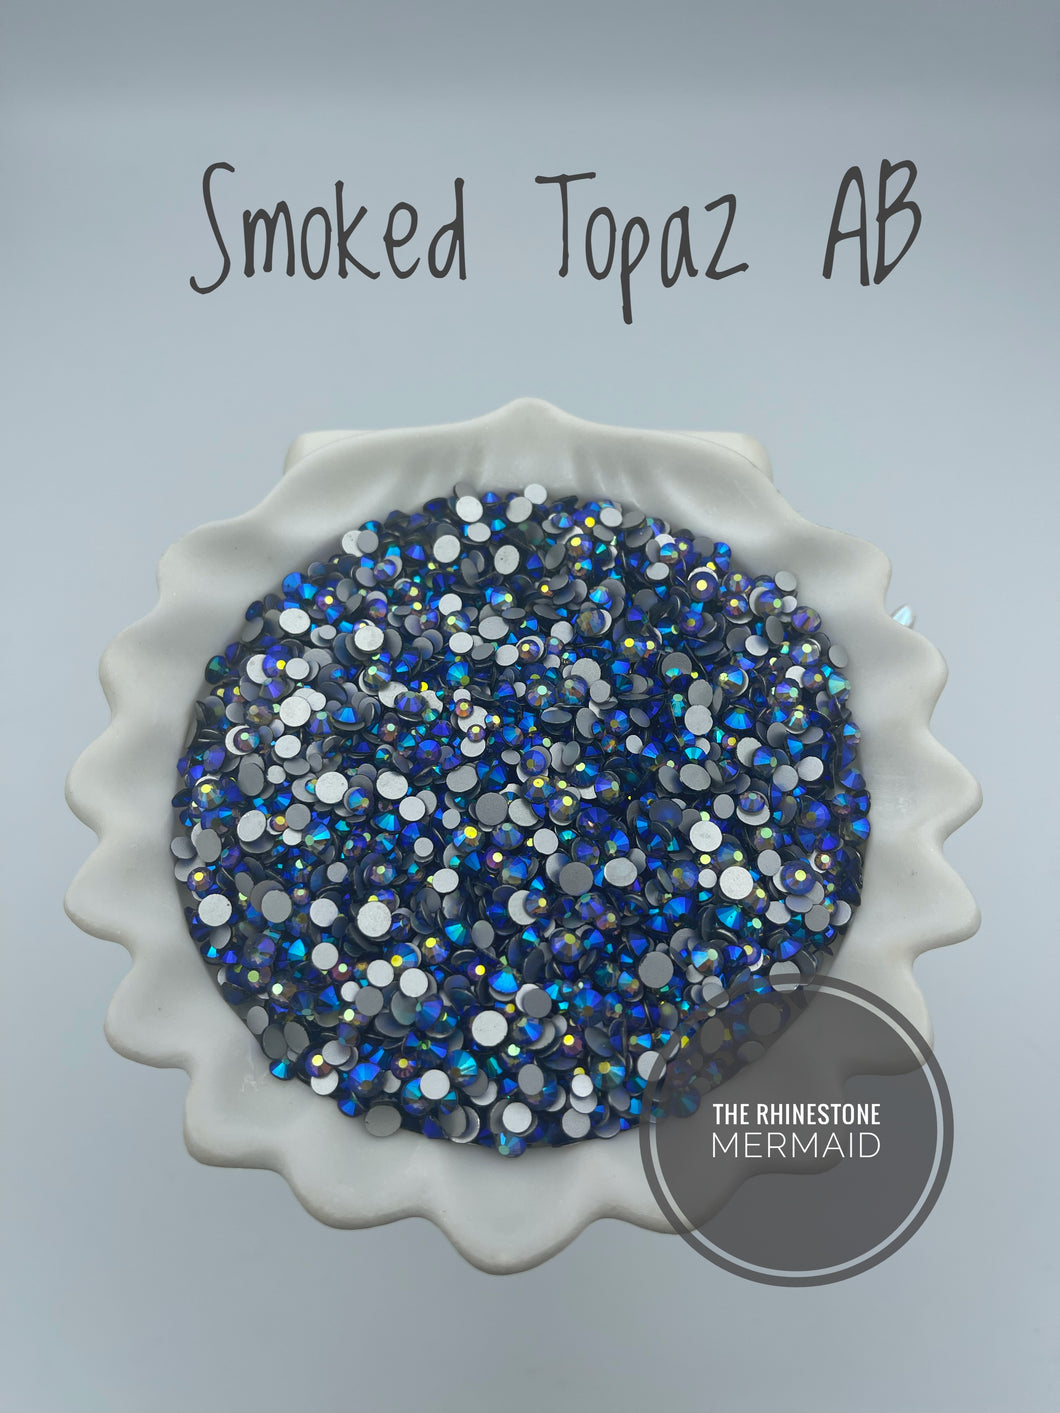 Smoked Topaz AB